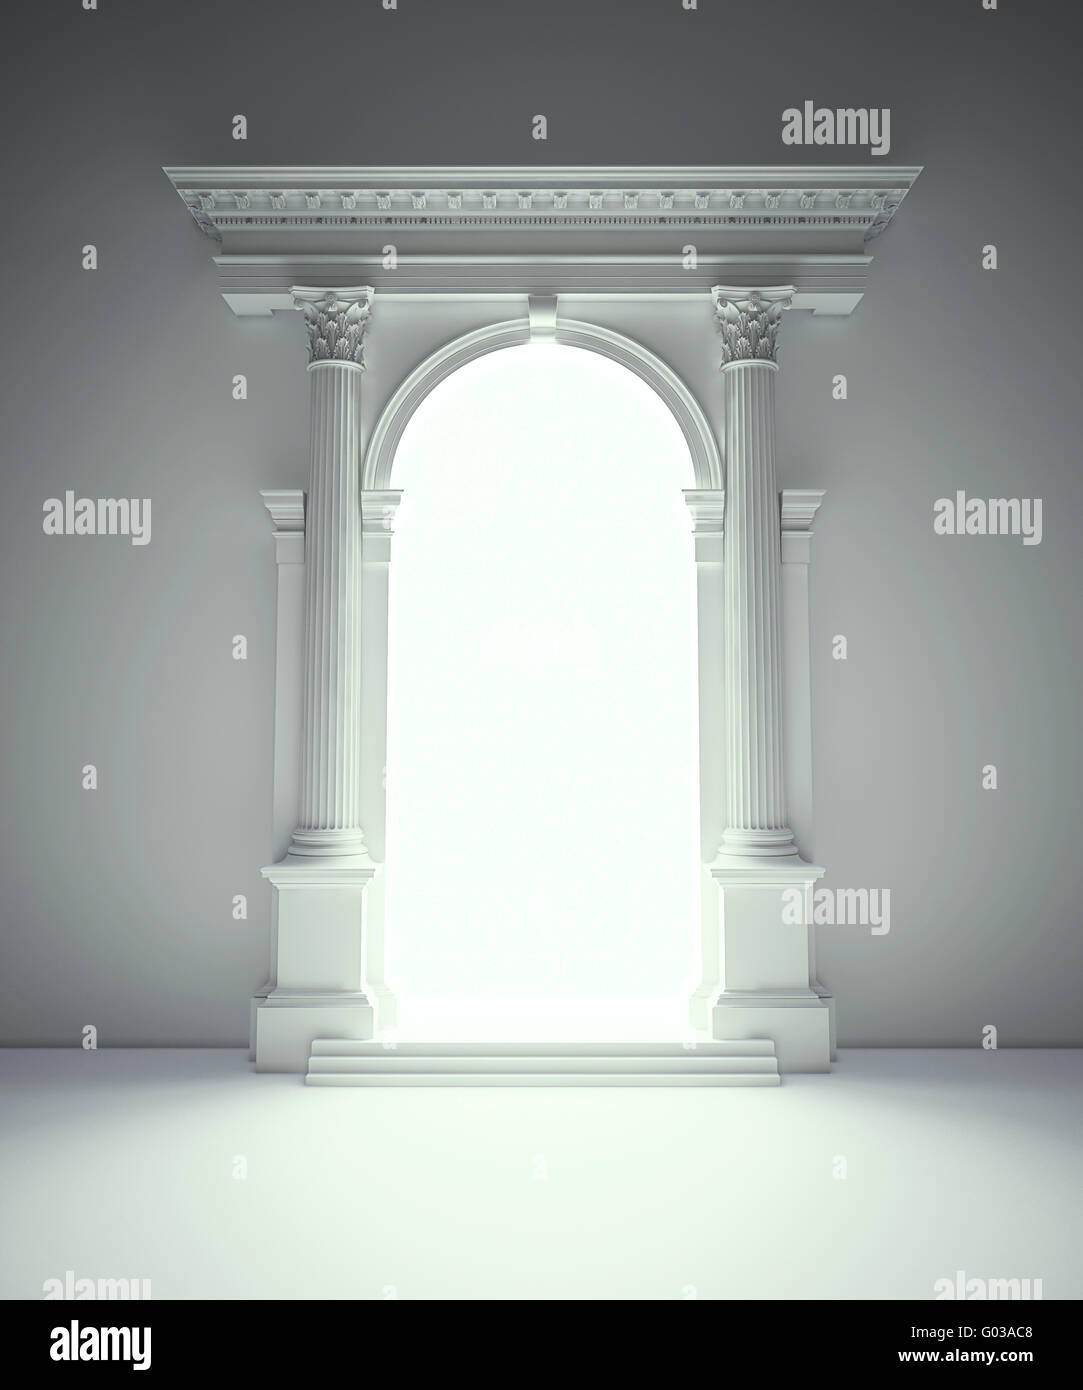 Klassische Architekturportal mit korinthischen Säulen, Arkaden und Gebälk Stockfoto